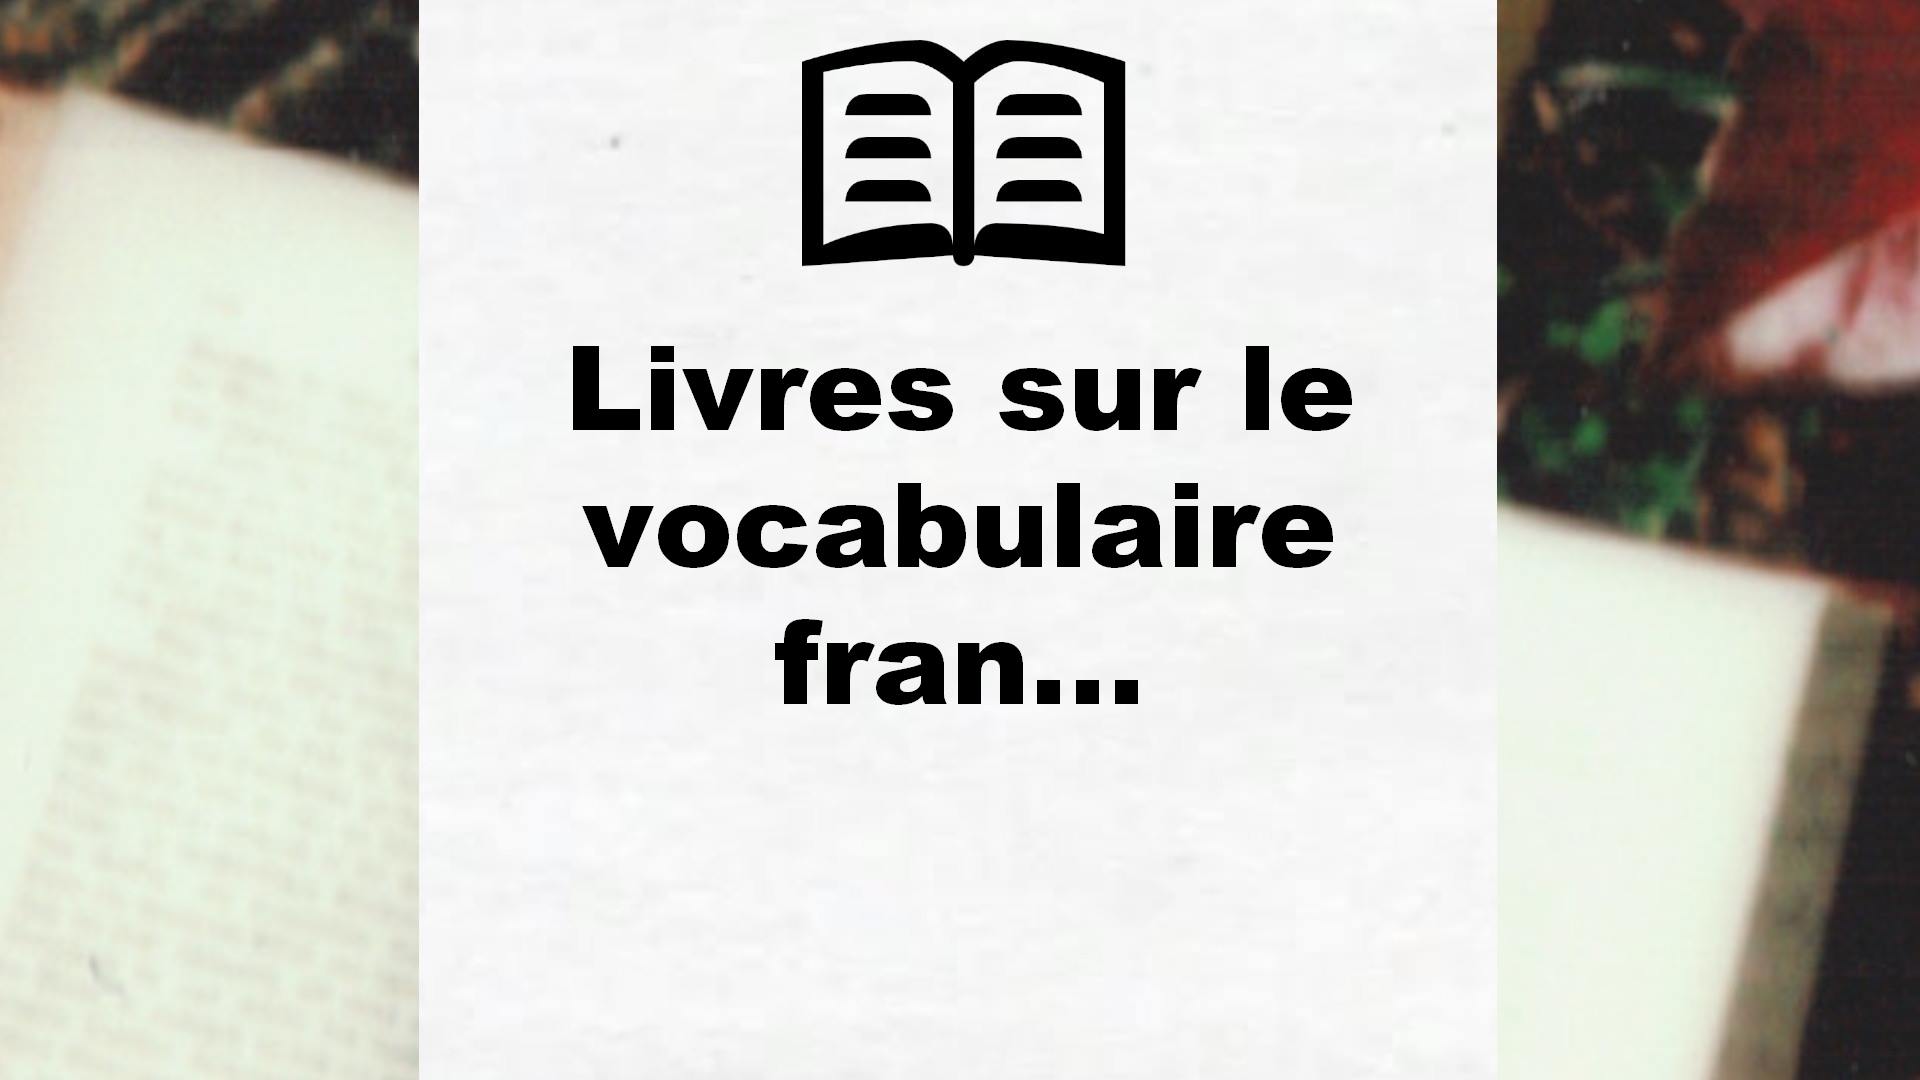 Livres sur le vocabulaire français